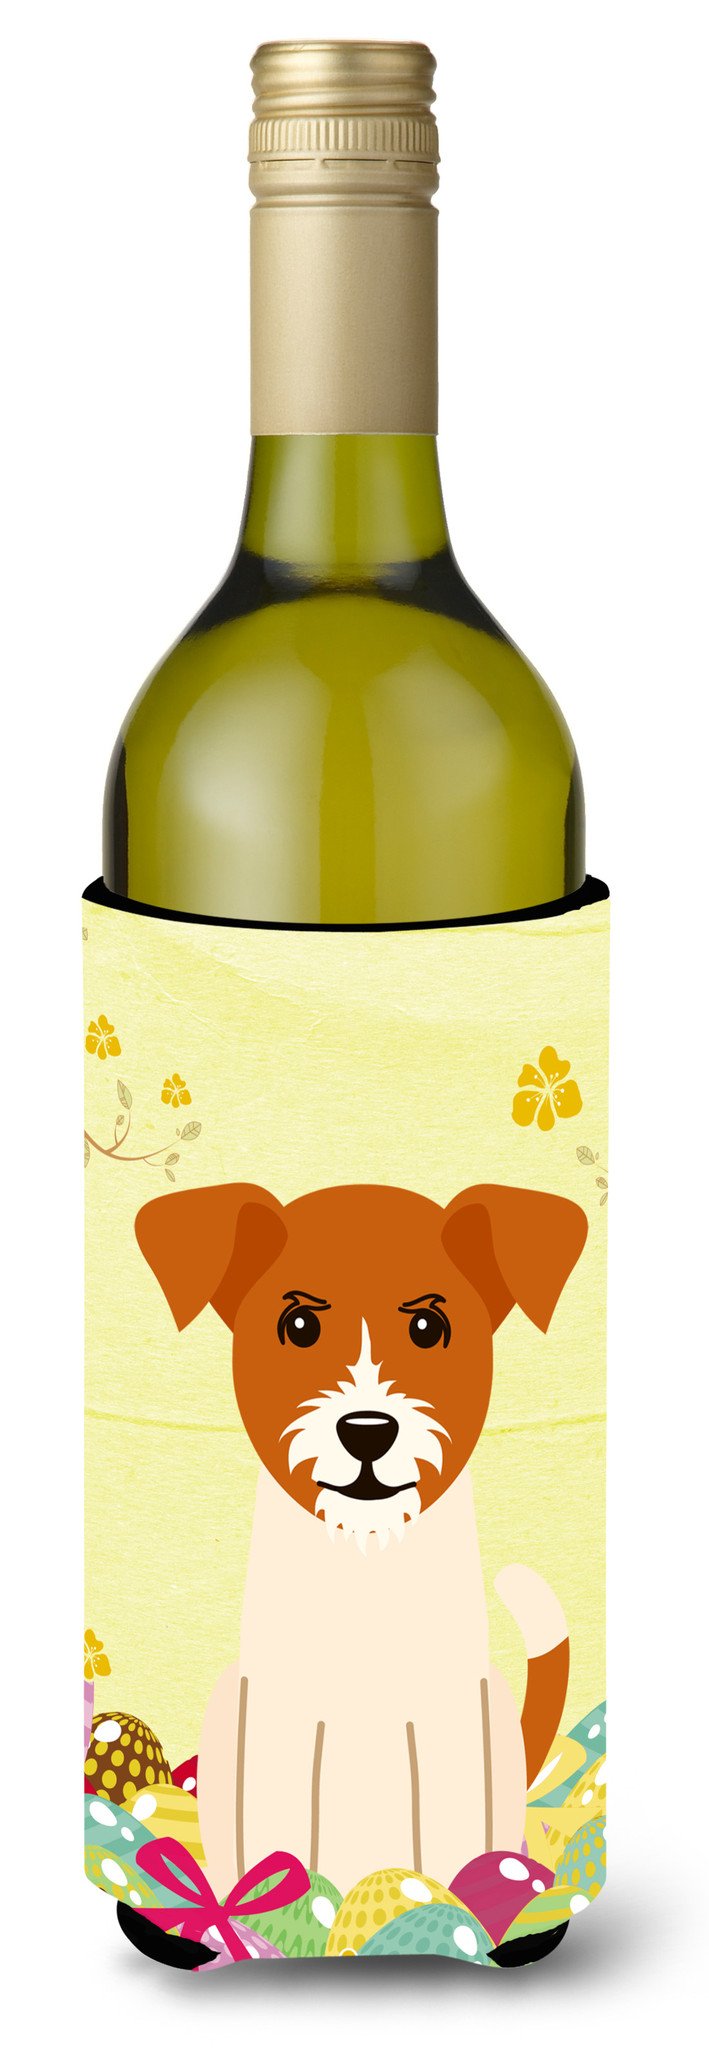 Easter Eggs Jack Russell Terrier Wine Bottle Beverge Insulator Hugger BB6108LITERK by Caroline's Treasures